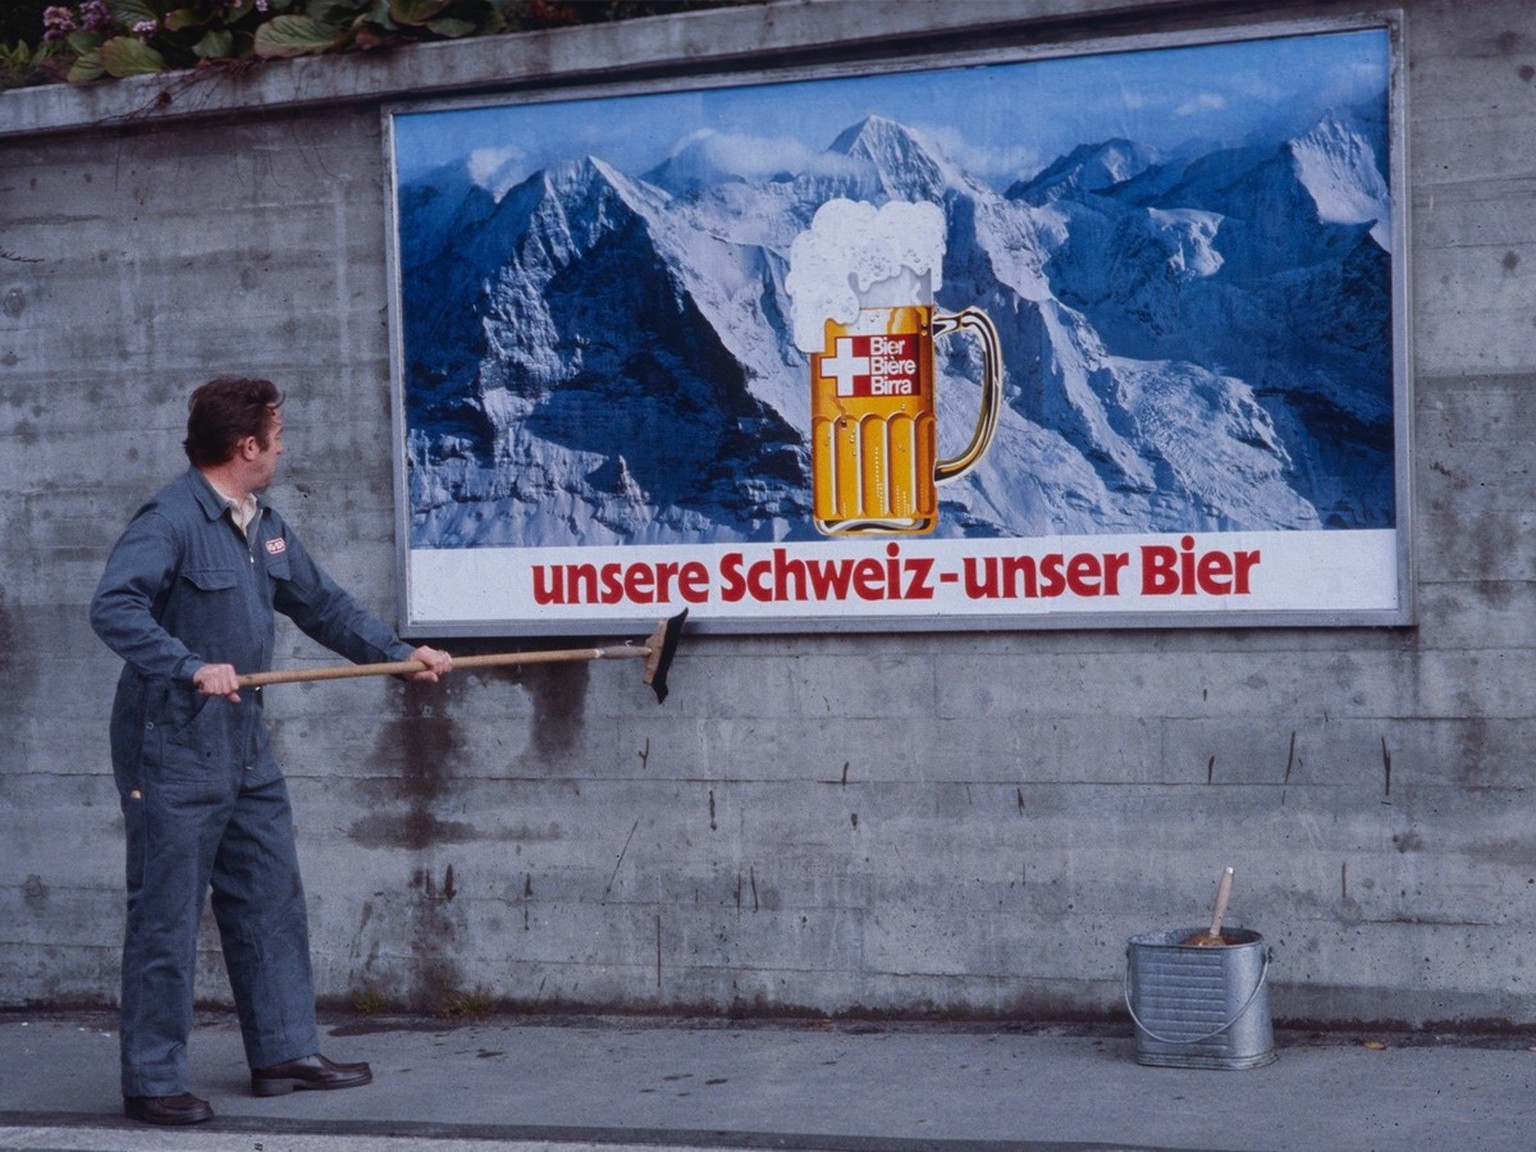 Werbung des Schweizer Brauereiverbandes für Schweizer Bier.
http://doi.org/10.3932/ethz-a-001258381